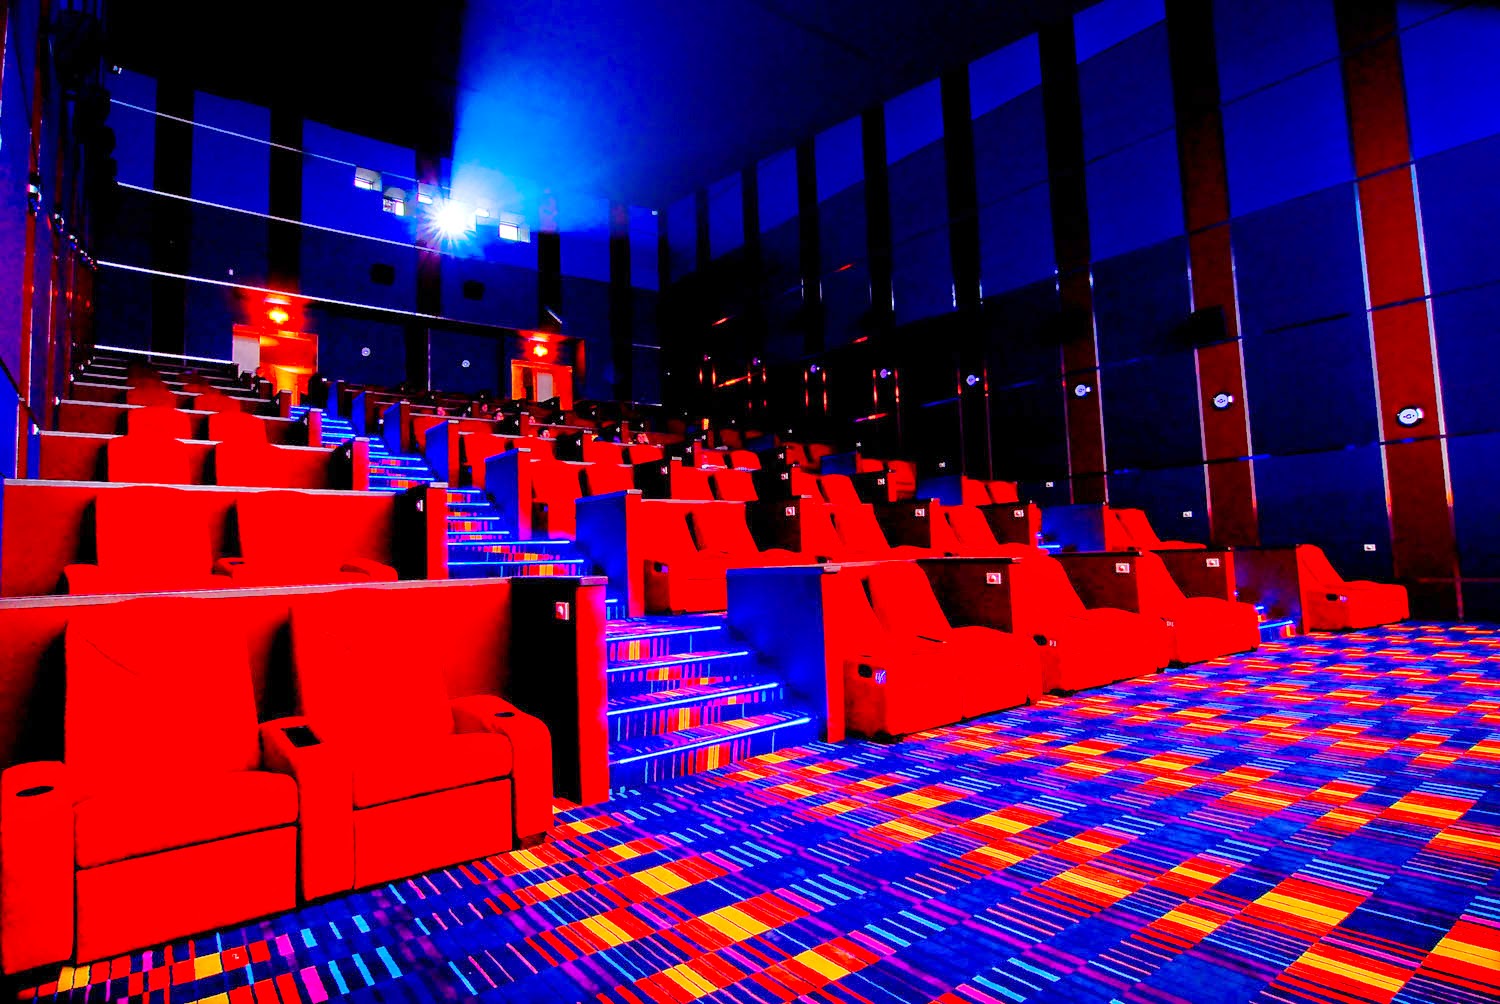 Хай синема. Кинотеатр. Зал кинотеатра. Современный кинотеатр. Красивые кинозалы.